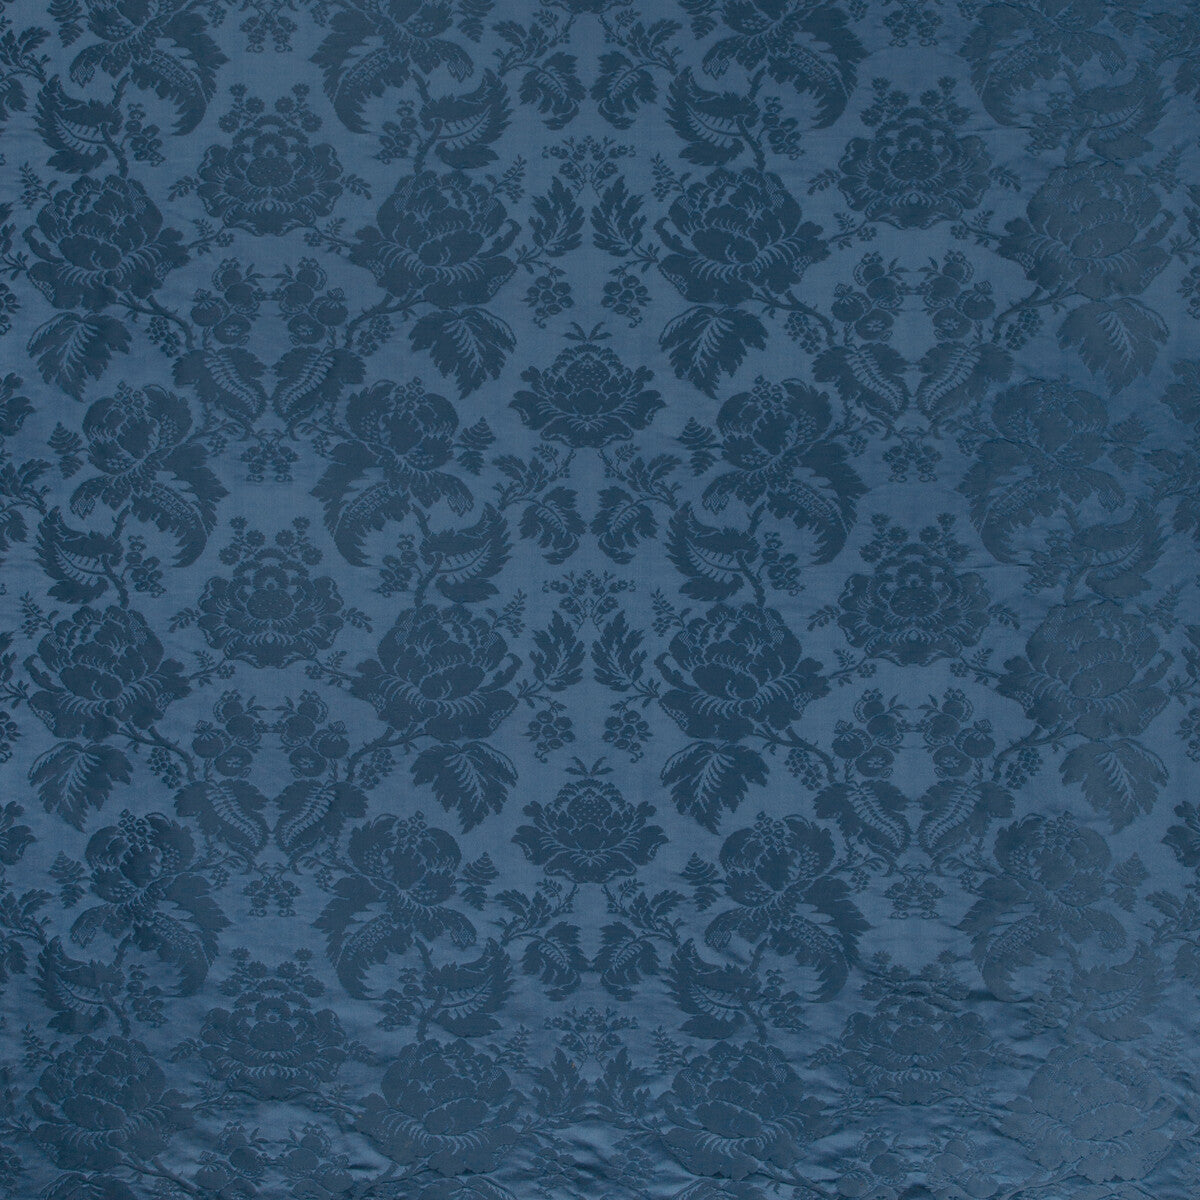 Moulins Damask fabric in delft color - pattern BR-81035.50.0 - by Brunschwig &amp; Fils